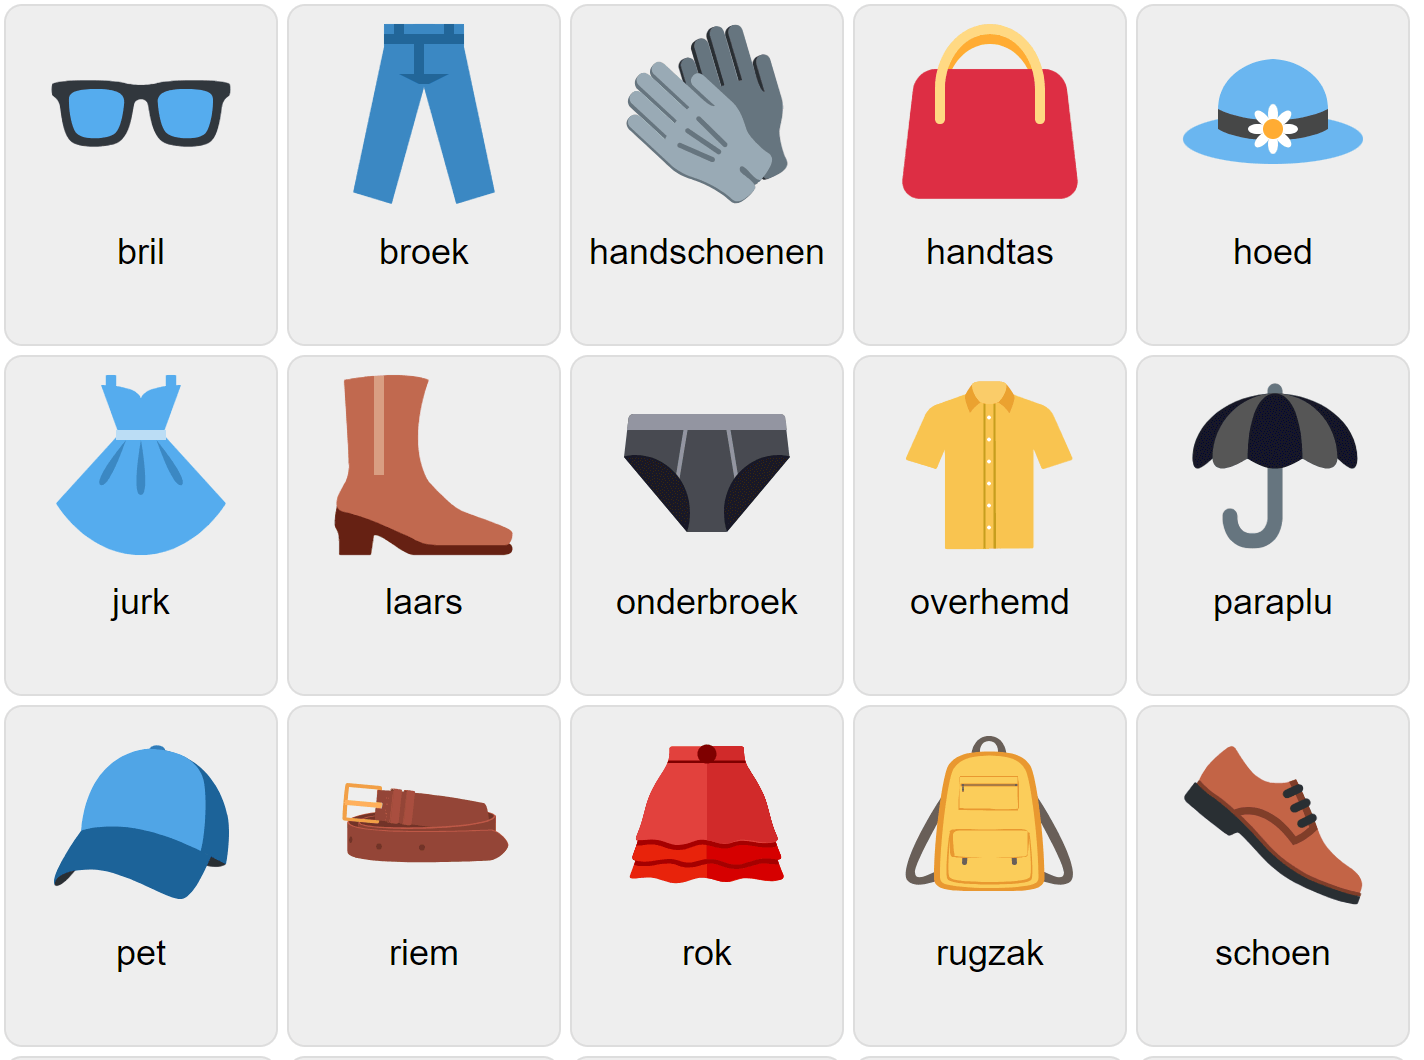 Clothes in Dutch